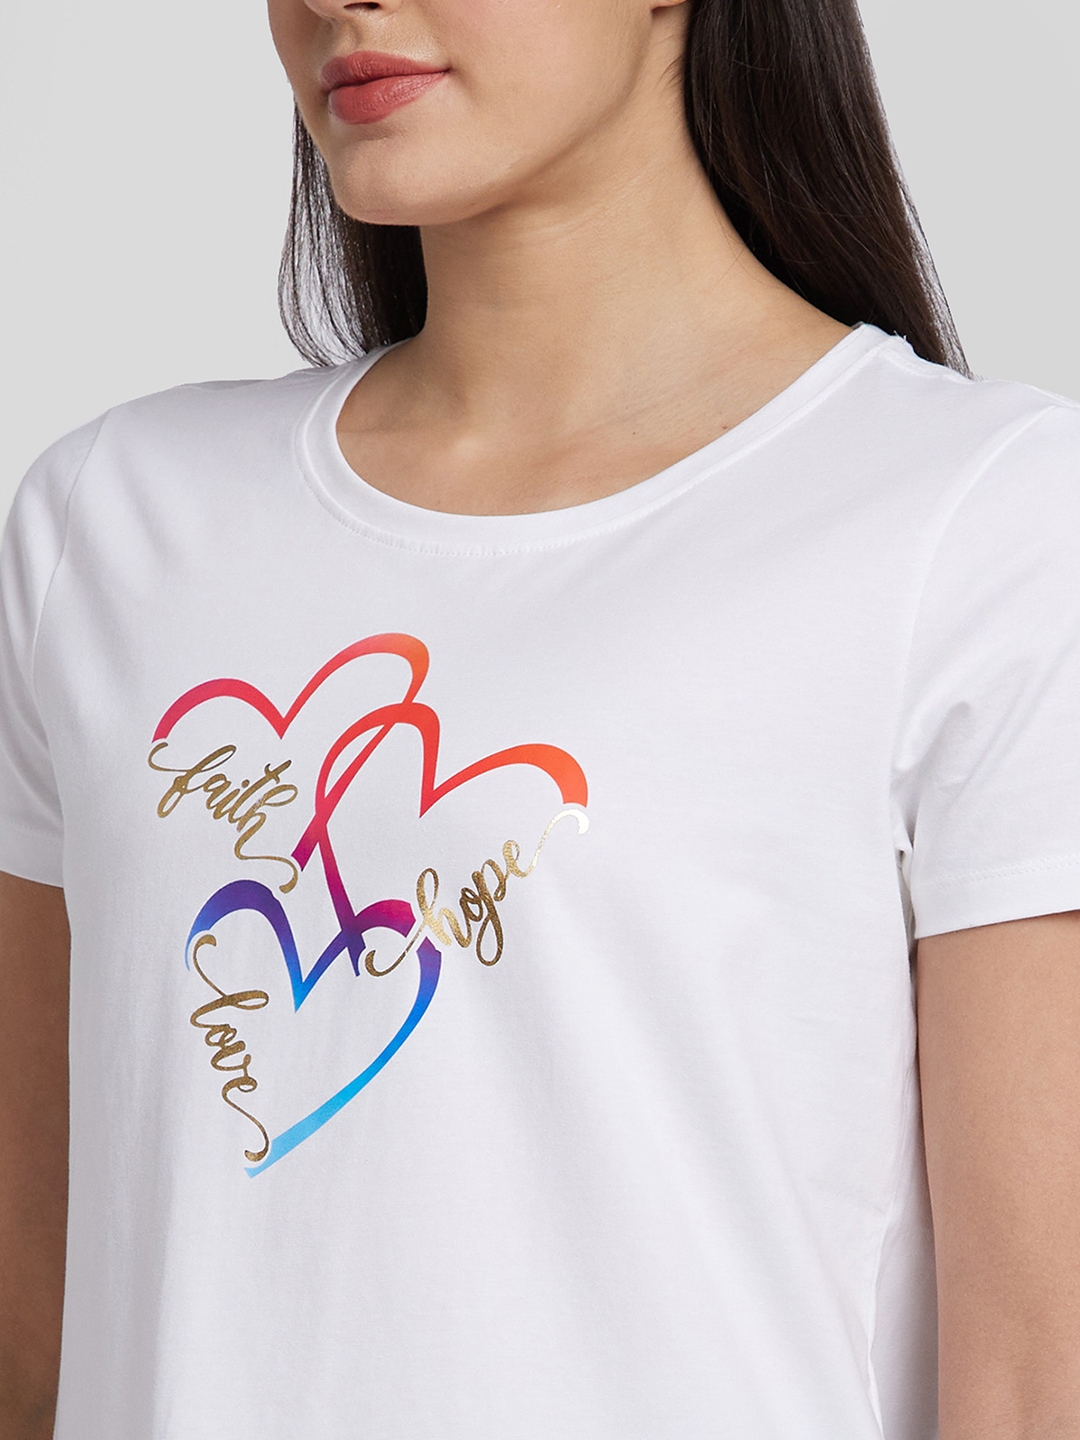 spykar | Spykar Women White Blended Regular Fit Printed Round Neck Tshirt 4